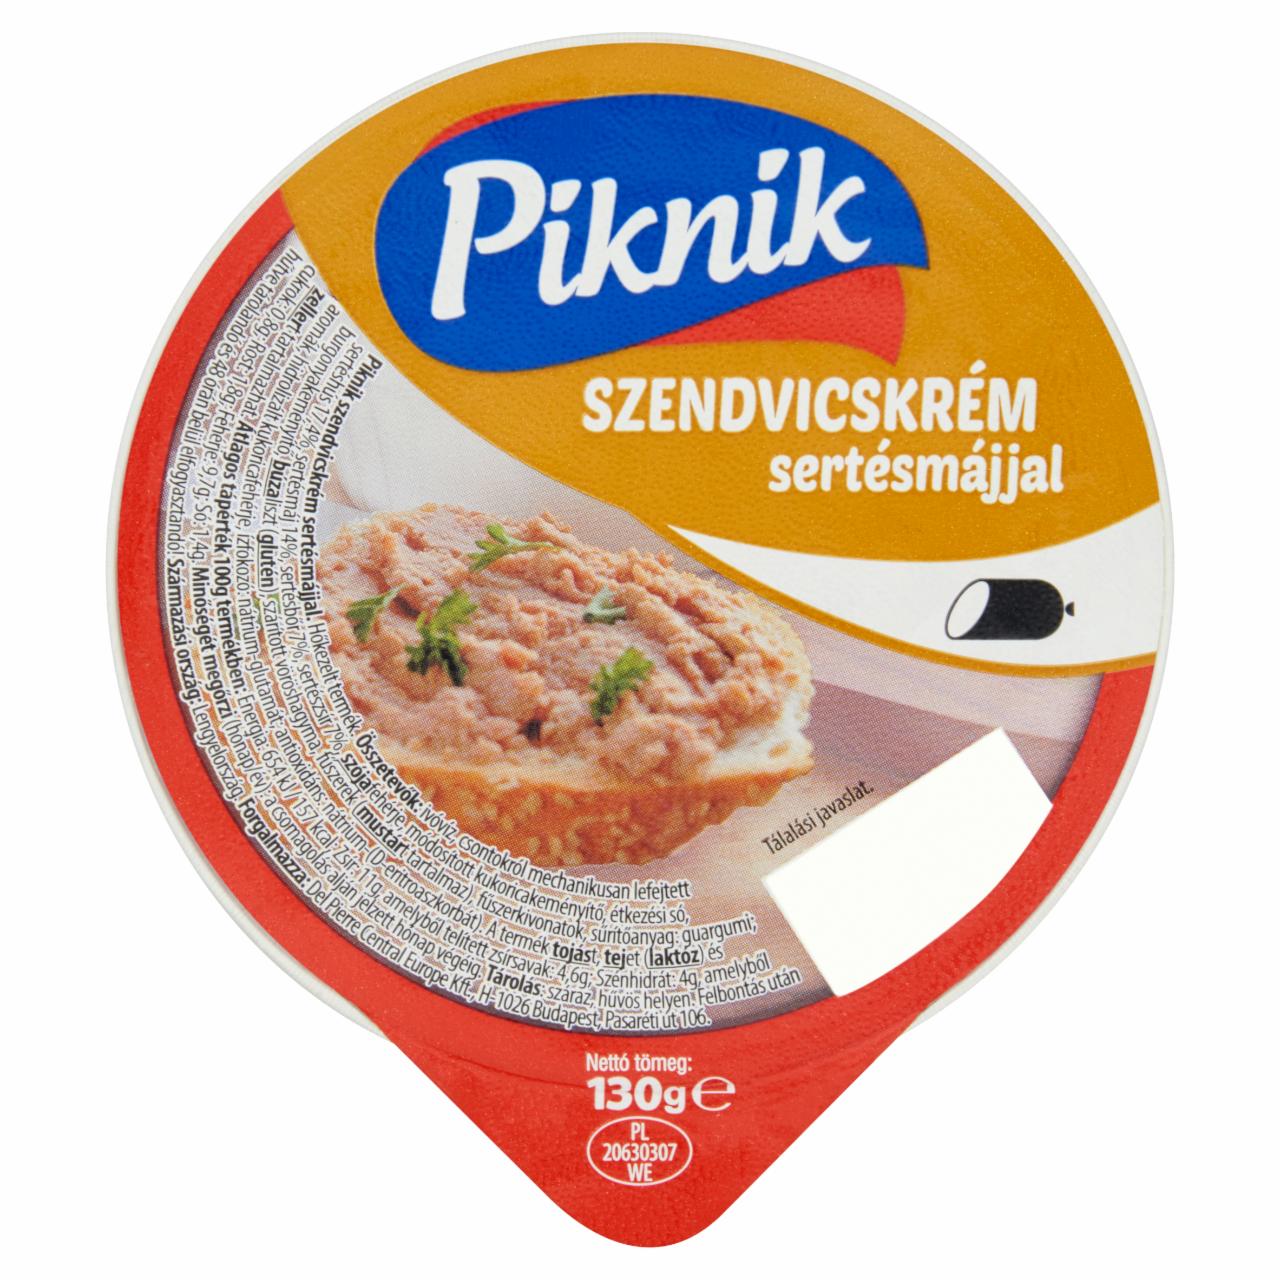 Képek - Piknik szendvicskrém sertésmájjal 130 g